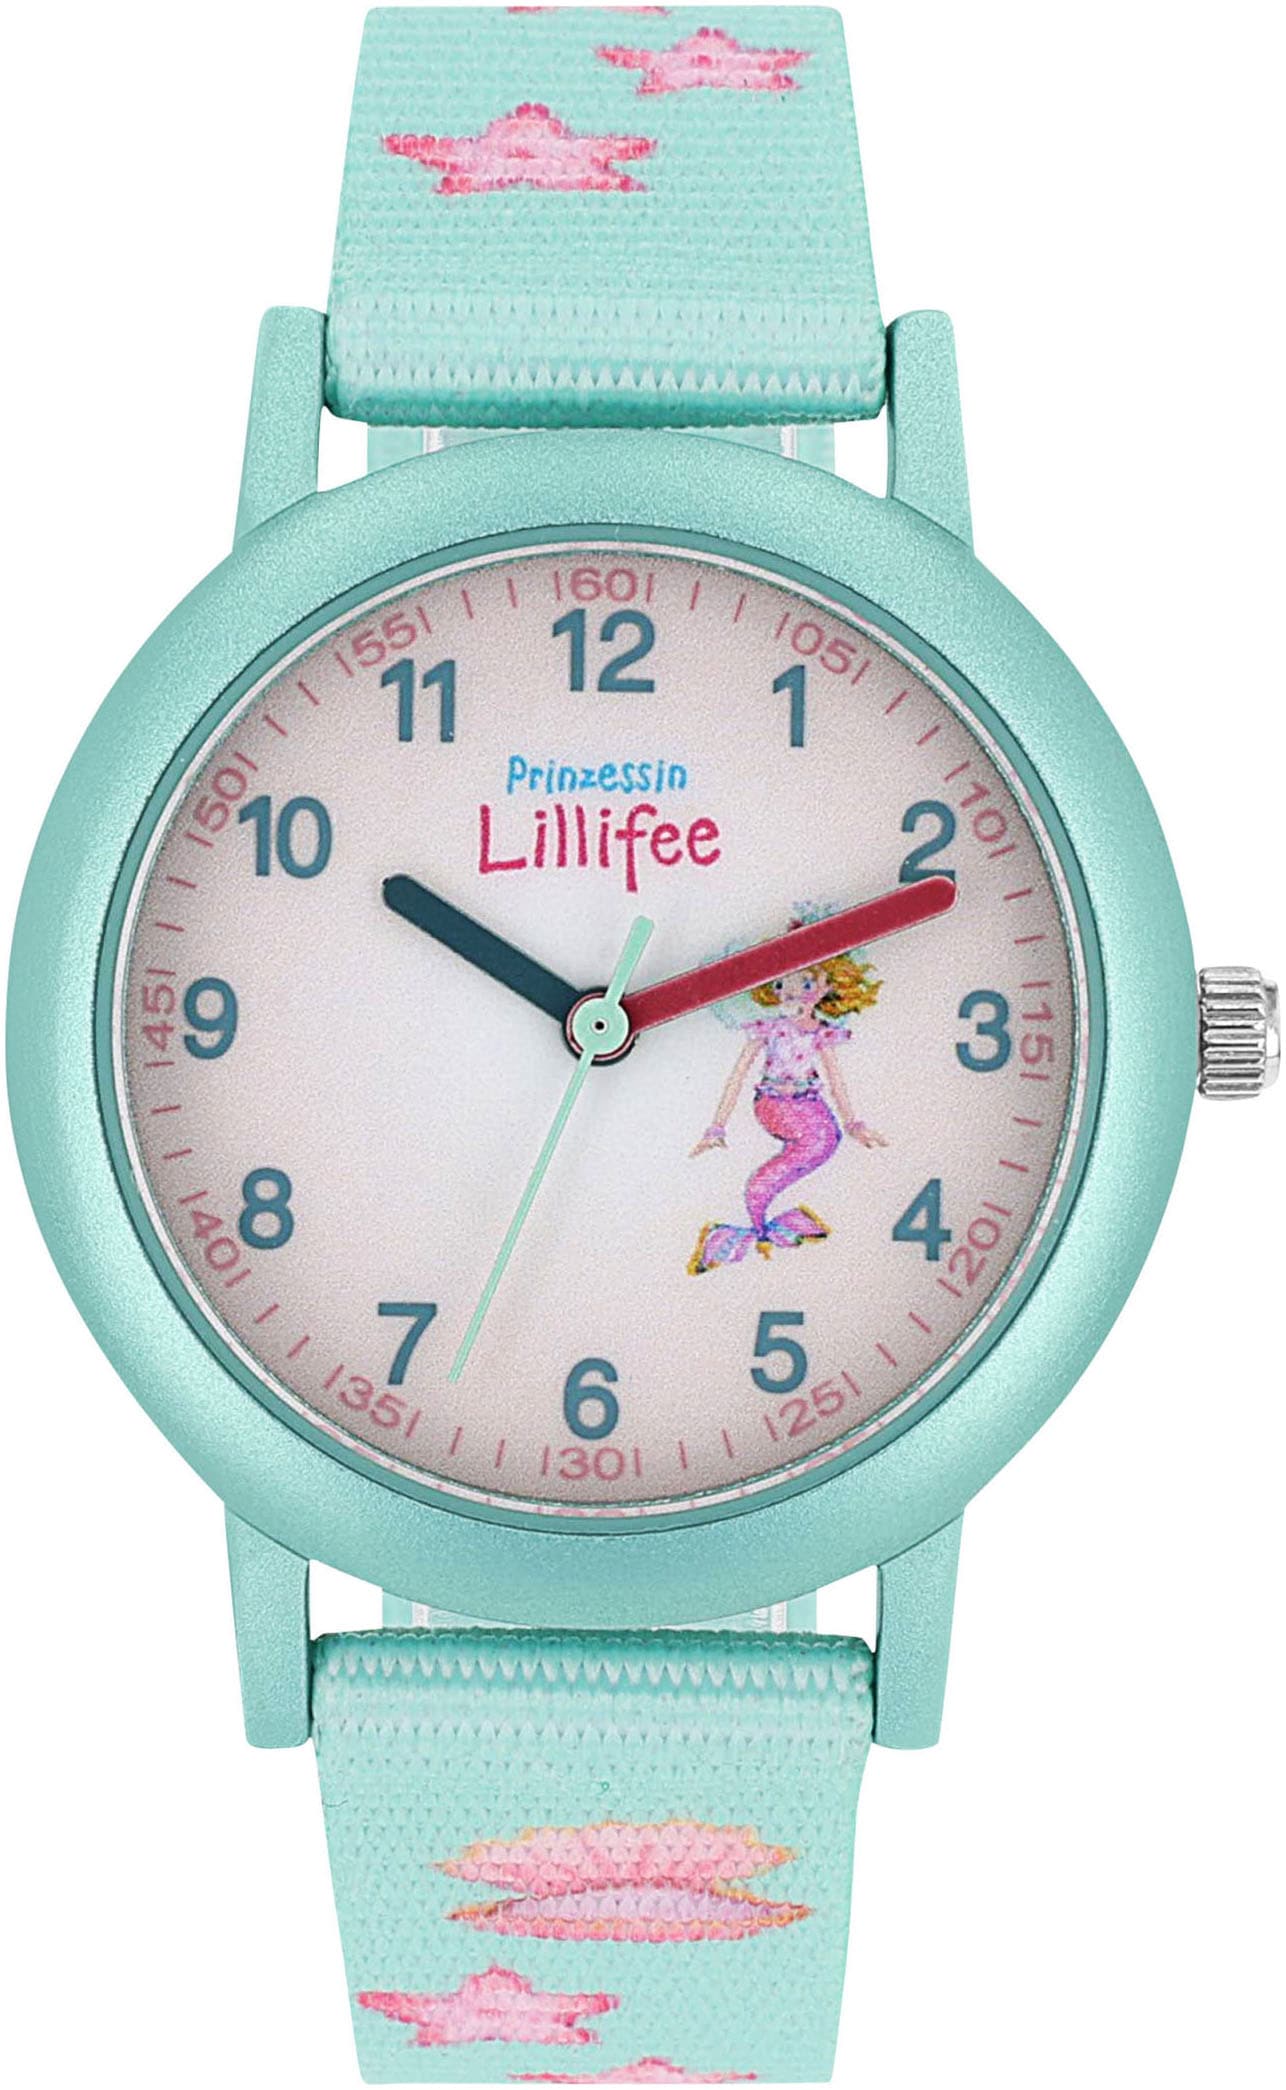 Prinzessin Lillifee Quarzuhr, Armbanduhr, Kinderuhr, Mädchenuhr, ideal auch als Geschenk